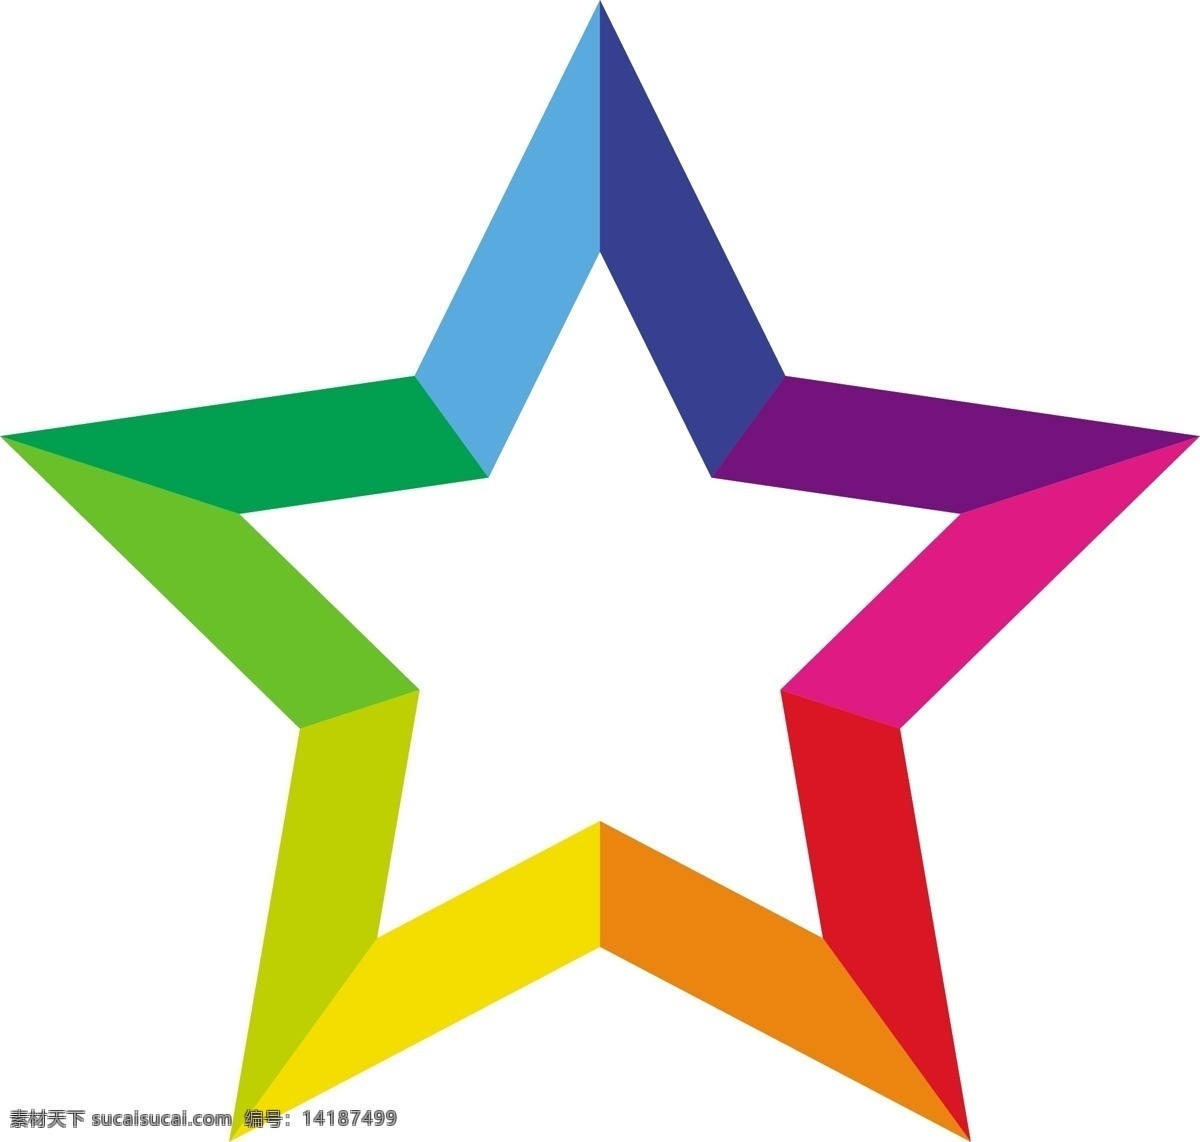 彩色 五角星 矢量 彩色五角星 五角星矢量 五角星素材 星星 星星标志 共享设计矢量 标志图标 其他图标